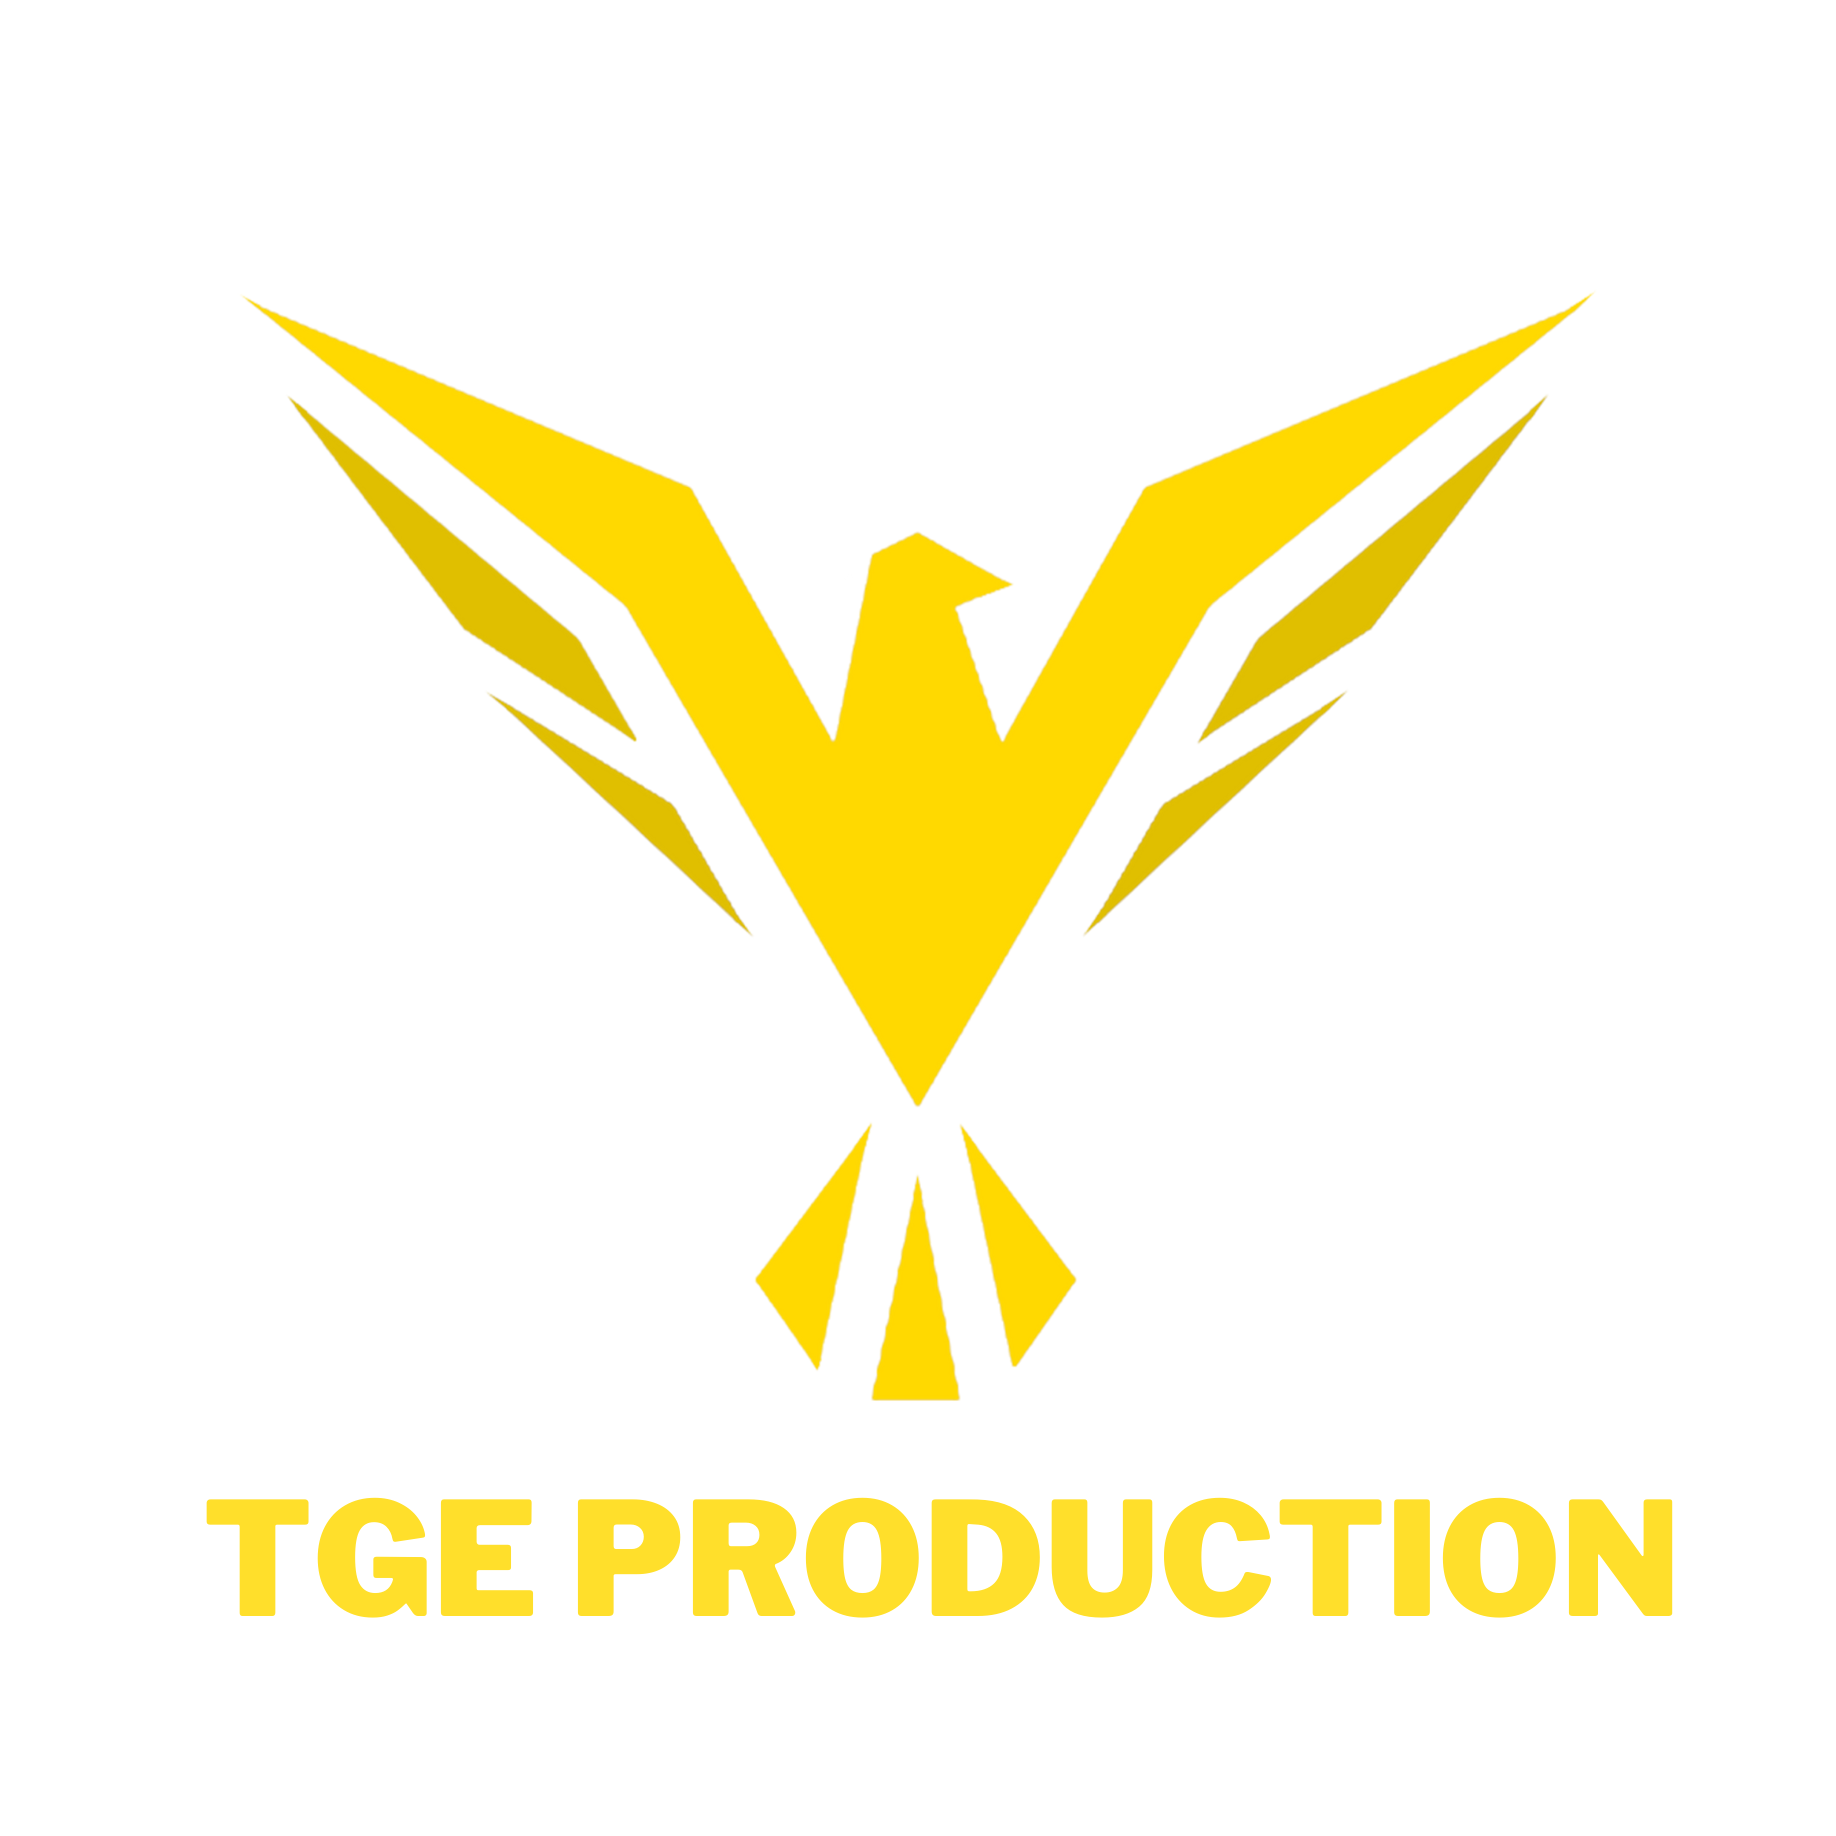 TGE Production - Facebook, Instagram, Twitter, Snapchat, Website, Email - Kontakt & Informacije | TGE Production